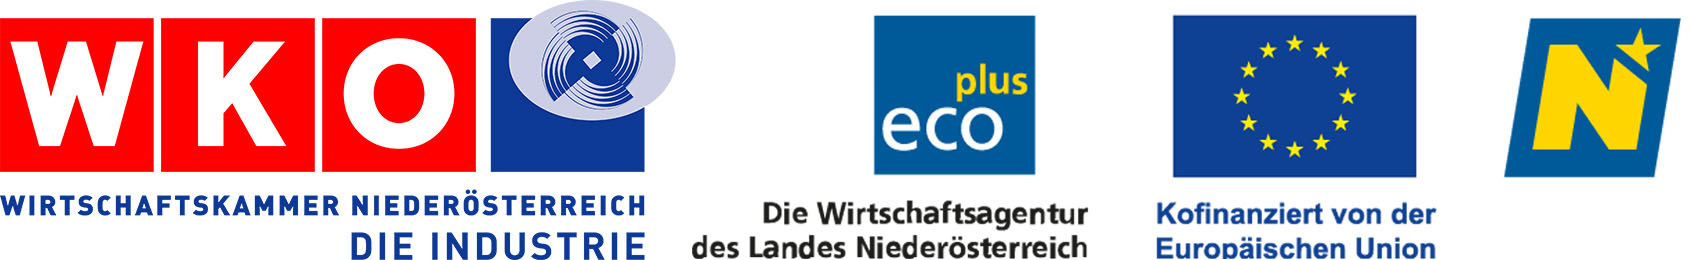 Logos Ecoplus Europaeisches Programm Innovationsökosystem Land Niederösterreich Wirtschaftskammer